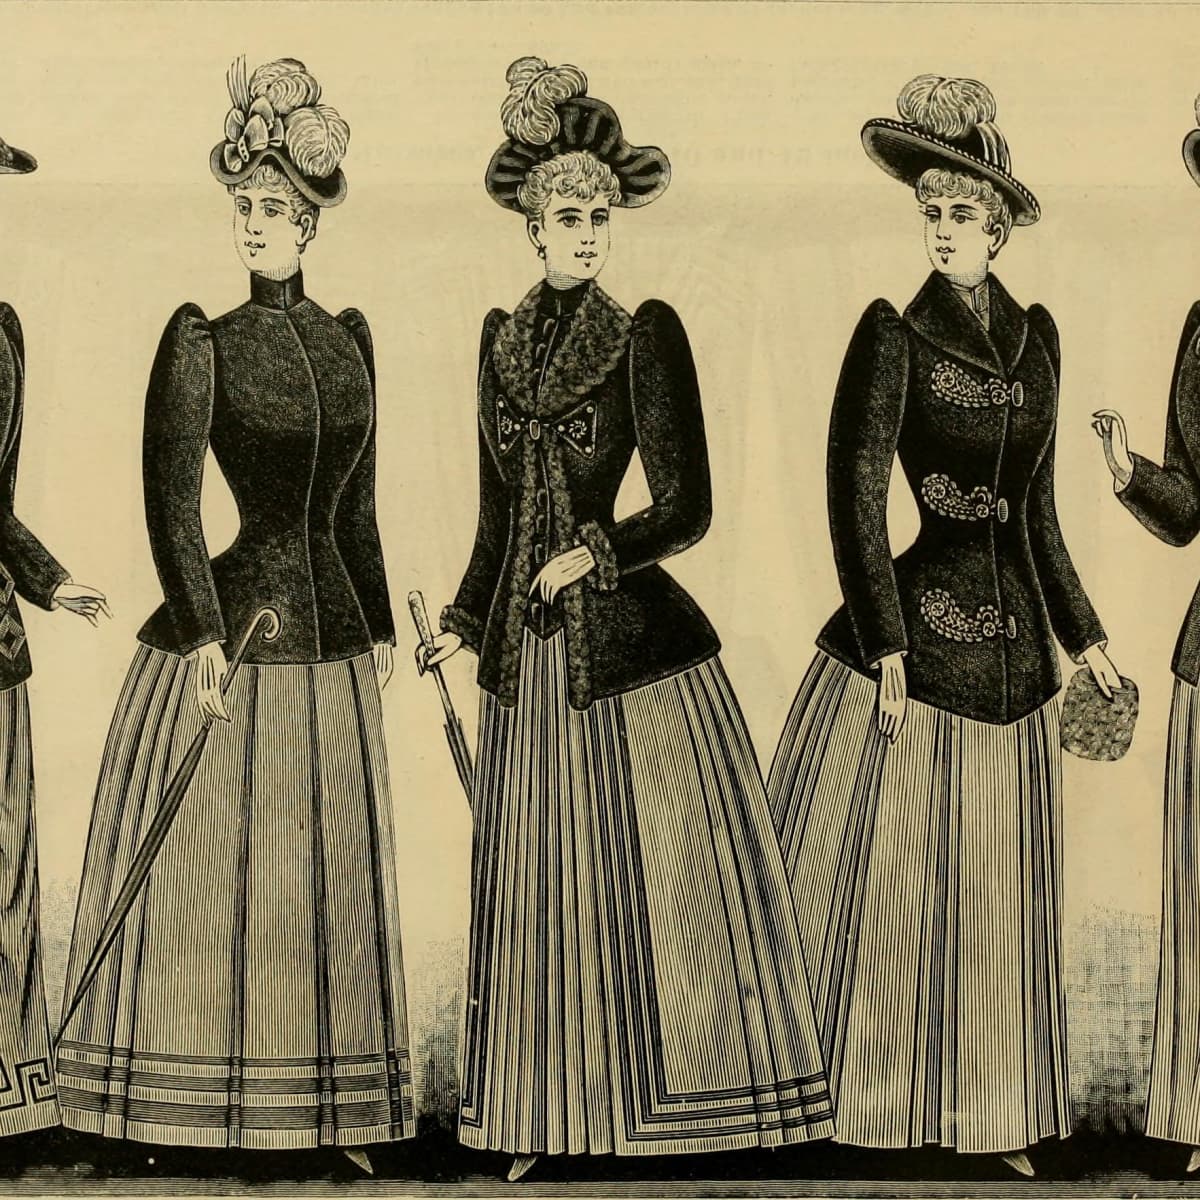 1890s undergarments